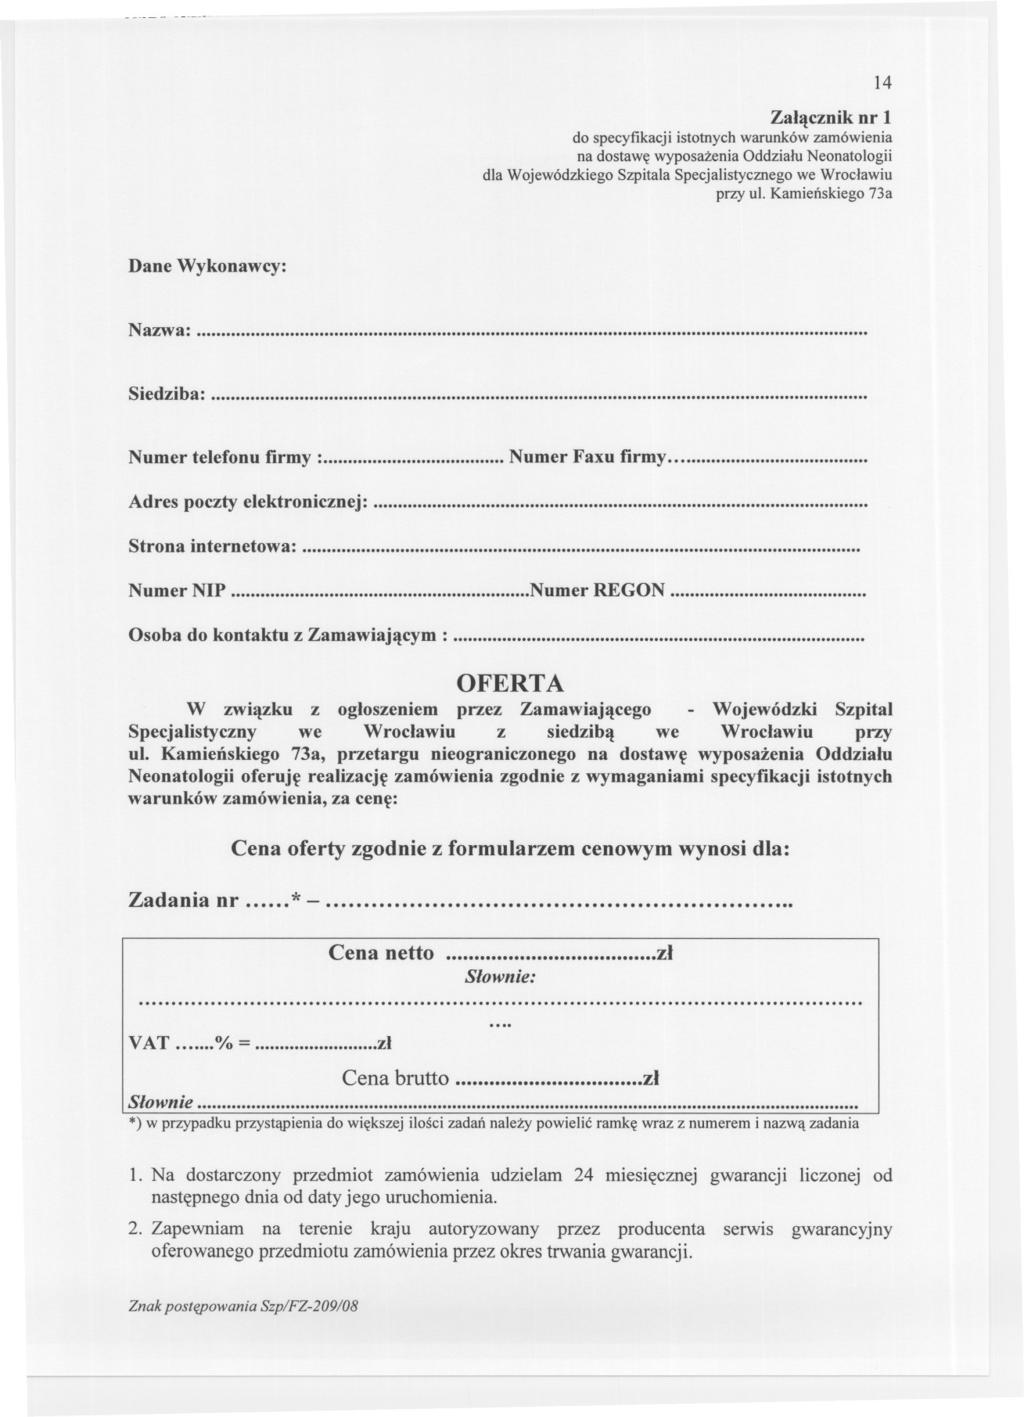 -_._--- 14 Zalacznik nr 1 do specyfikacji istotnych warunków zamówienia na dostawe wyposazenia Oddzialu Neonatologii dla Wojewódzkiego Szpitala Specjalistycznego we Wroclawiu przy ul.